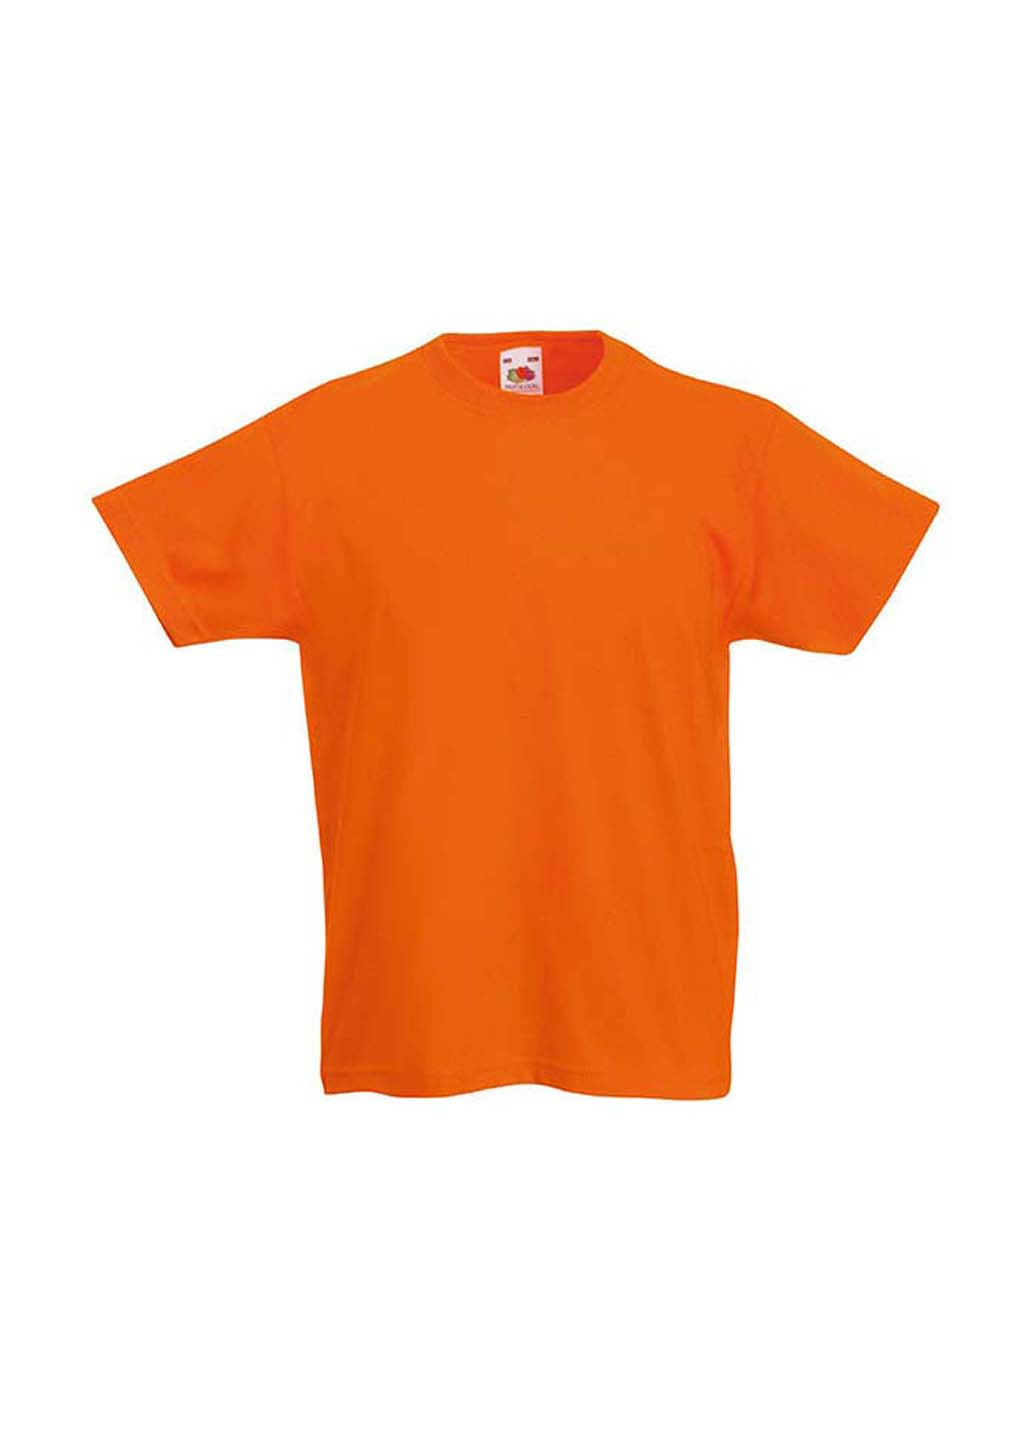 Оранжевая демисезонная футболка Fruit of the Loom 61033044164